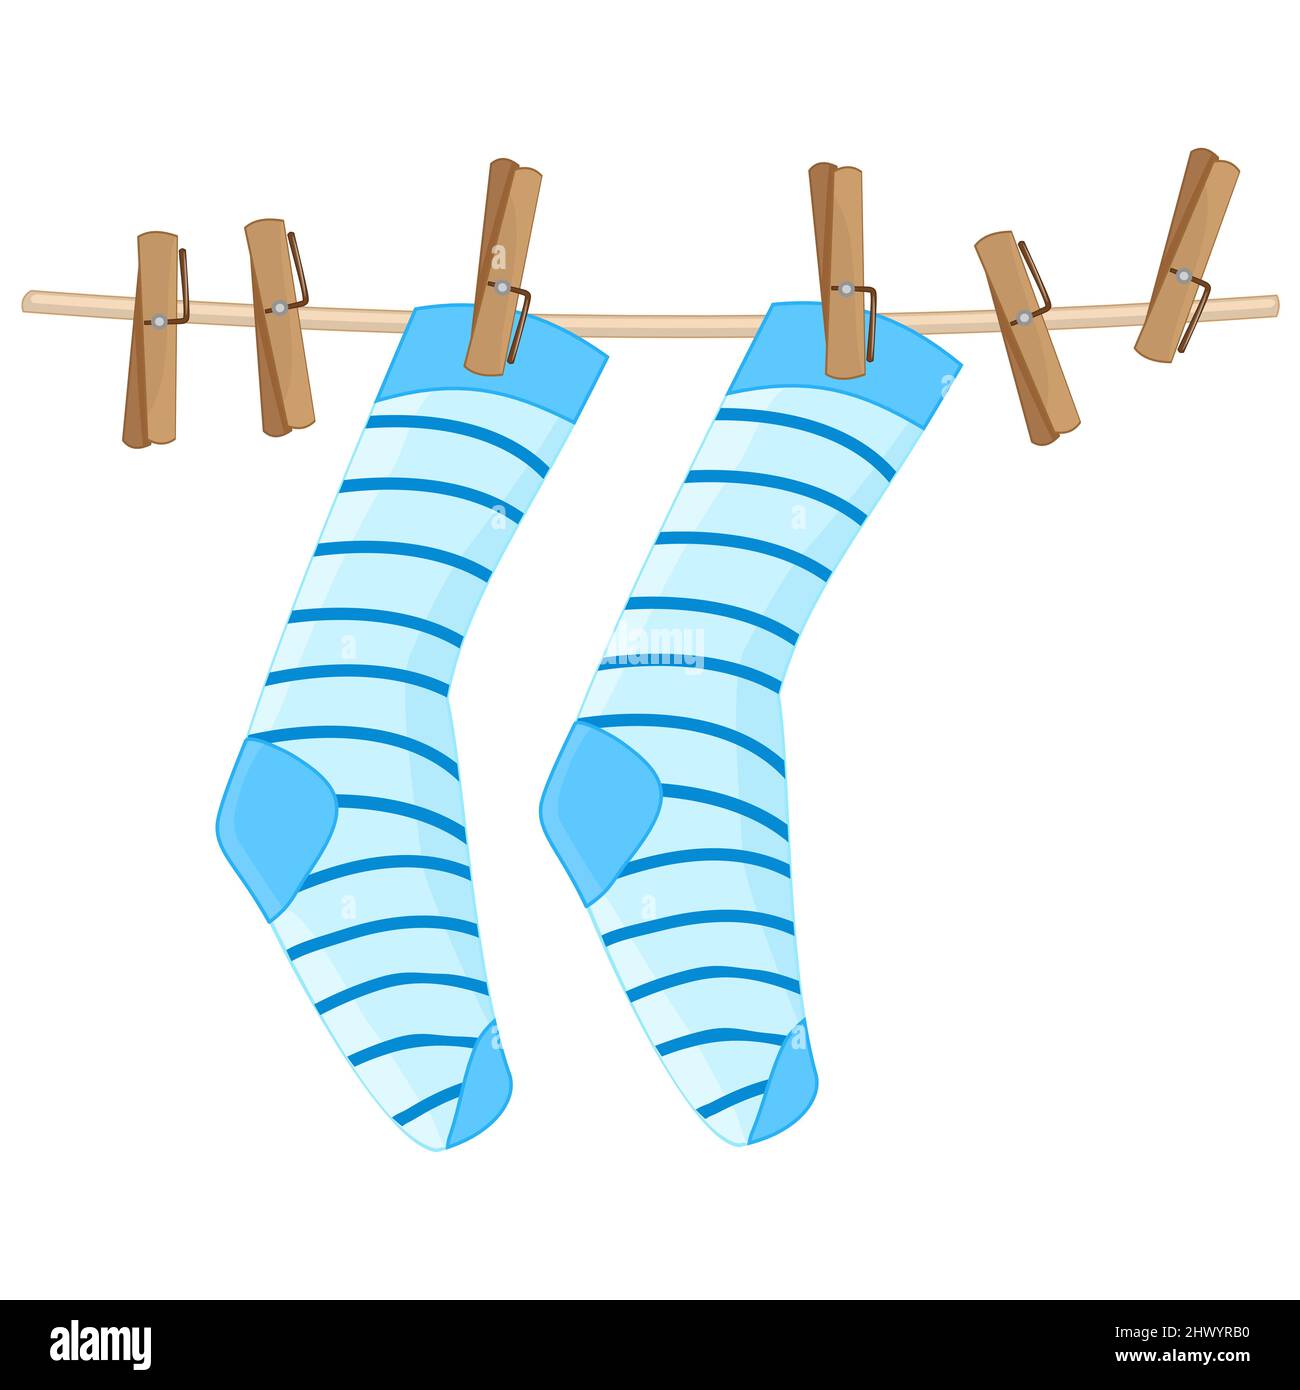 Socken hängen auf roped.Blue gestreiften Socken auf Wäscheleine.Baumwolle  oder Wolle Socke trocken und hängen an Wäschesteine mit  Wäscheklammer.Wäschetrocknung Symbol.Vektor Stock-Vektorgrafik - Alamy